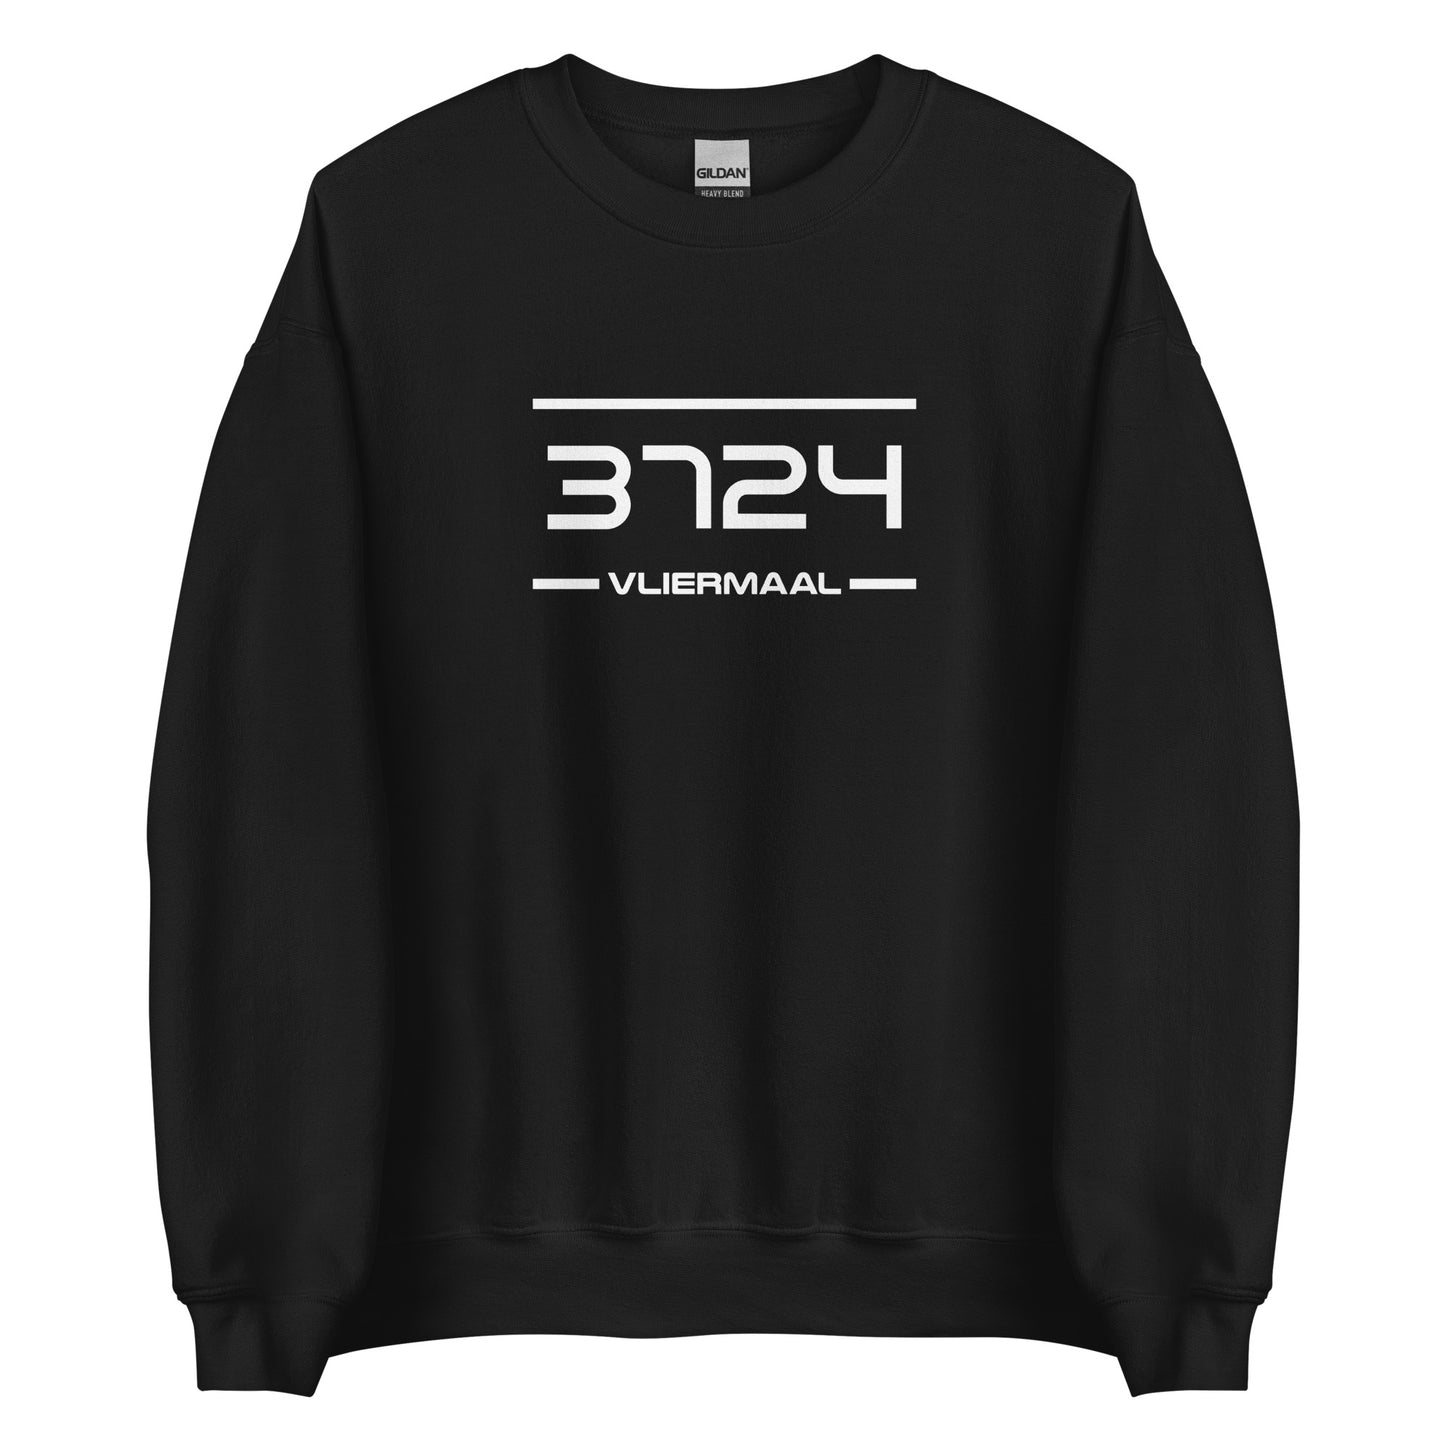 Sweater - 3724 - Vliermaal (M/V)